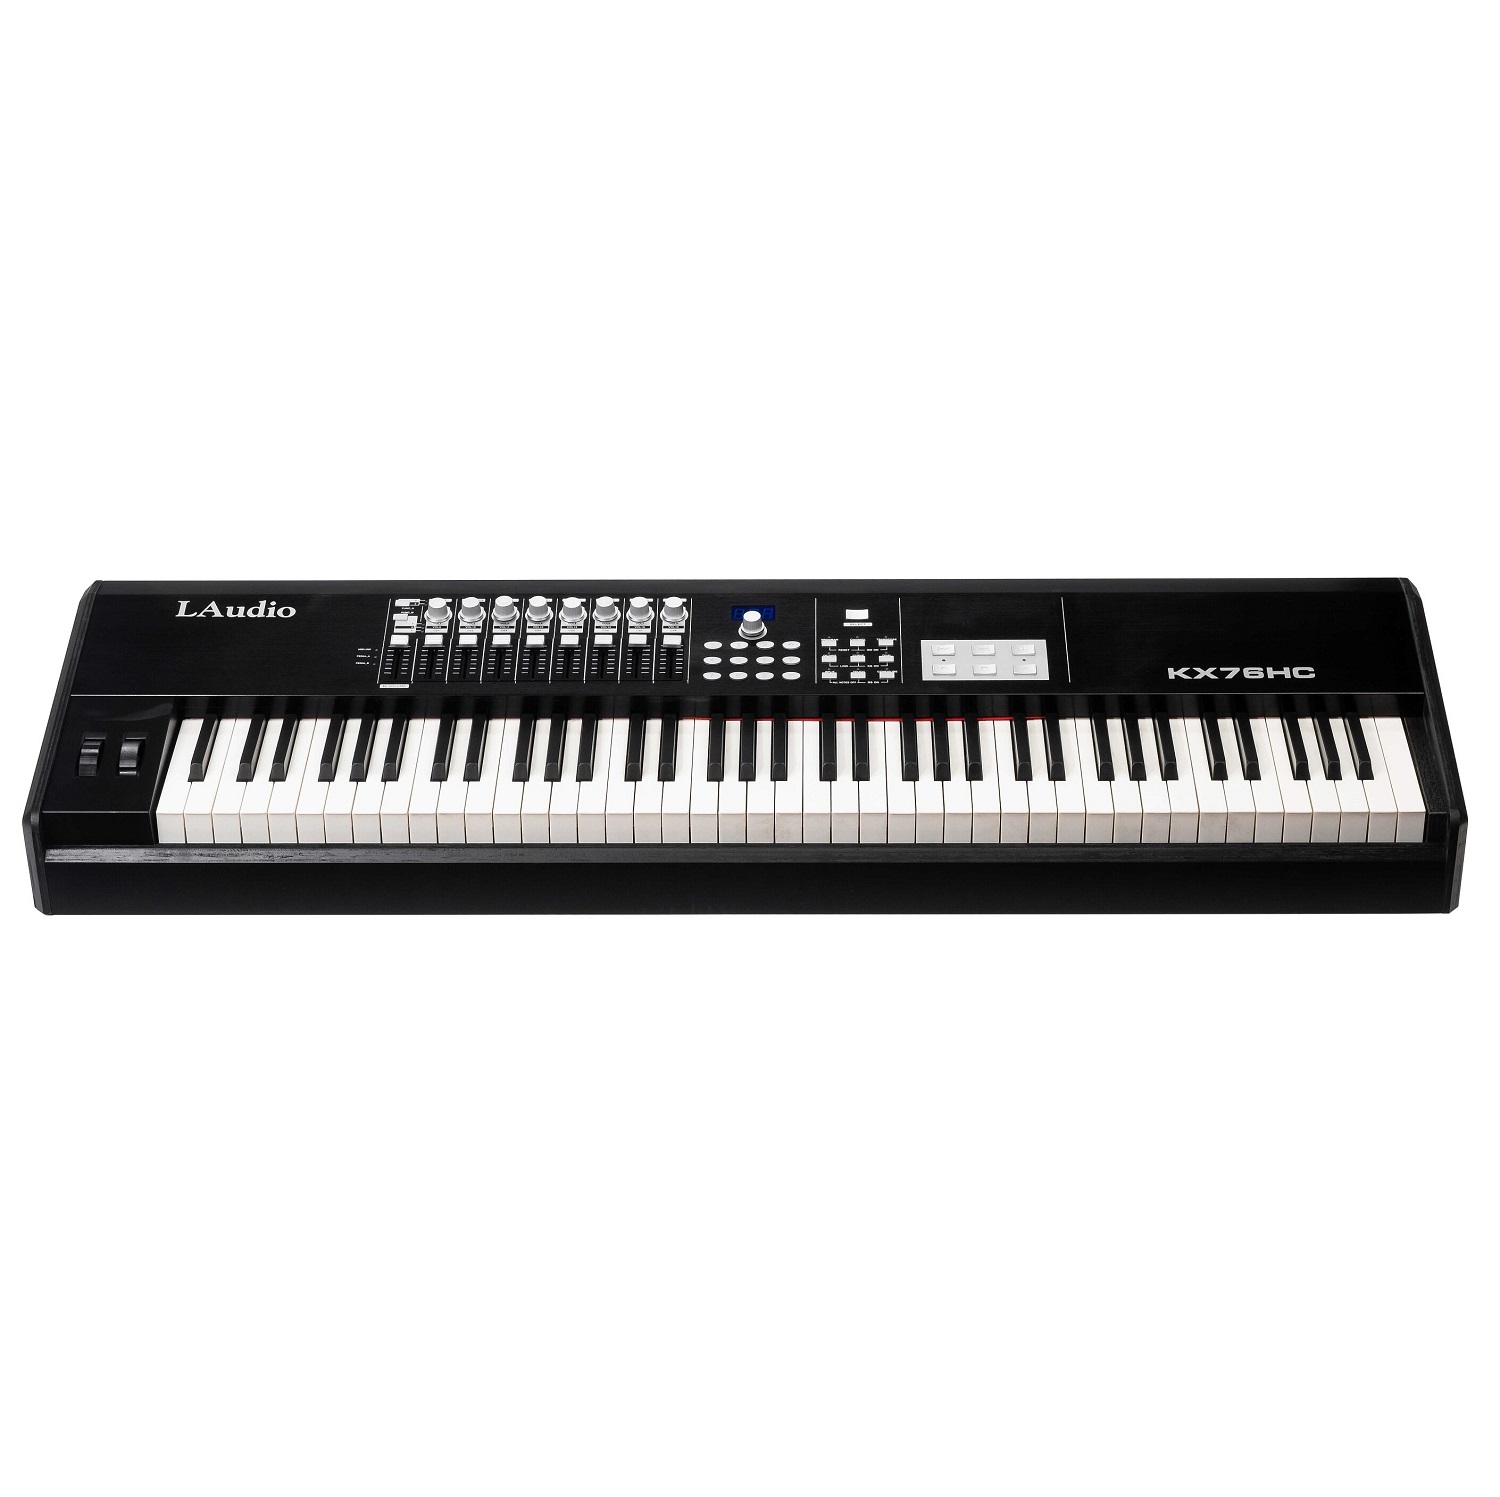 MIDI клавиатуры L Audio KX76HC ножной педальный переключатель usb midi контроллер пользовательская комбинация клавиш